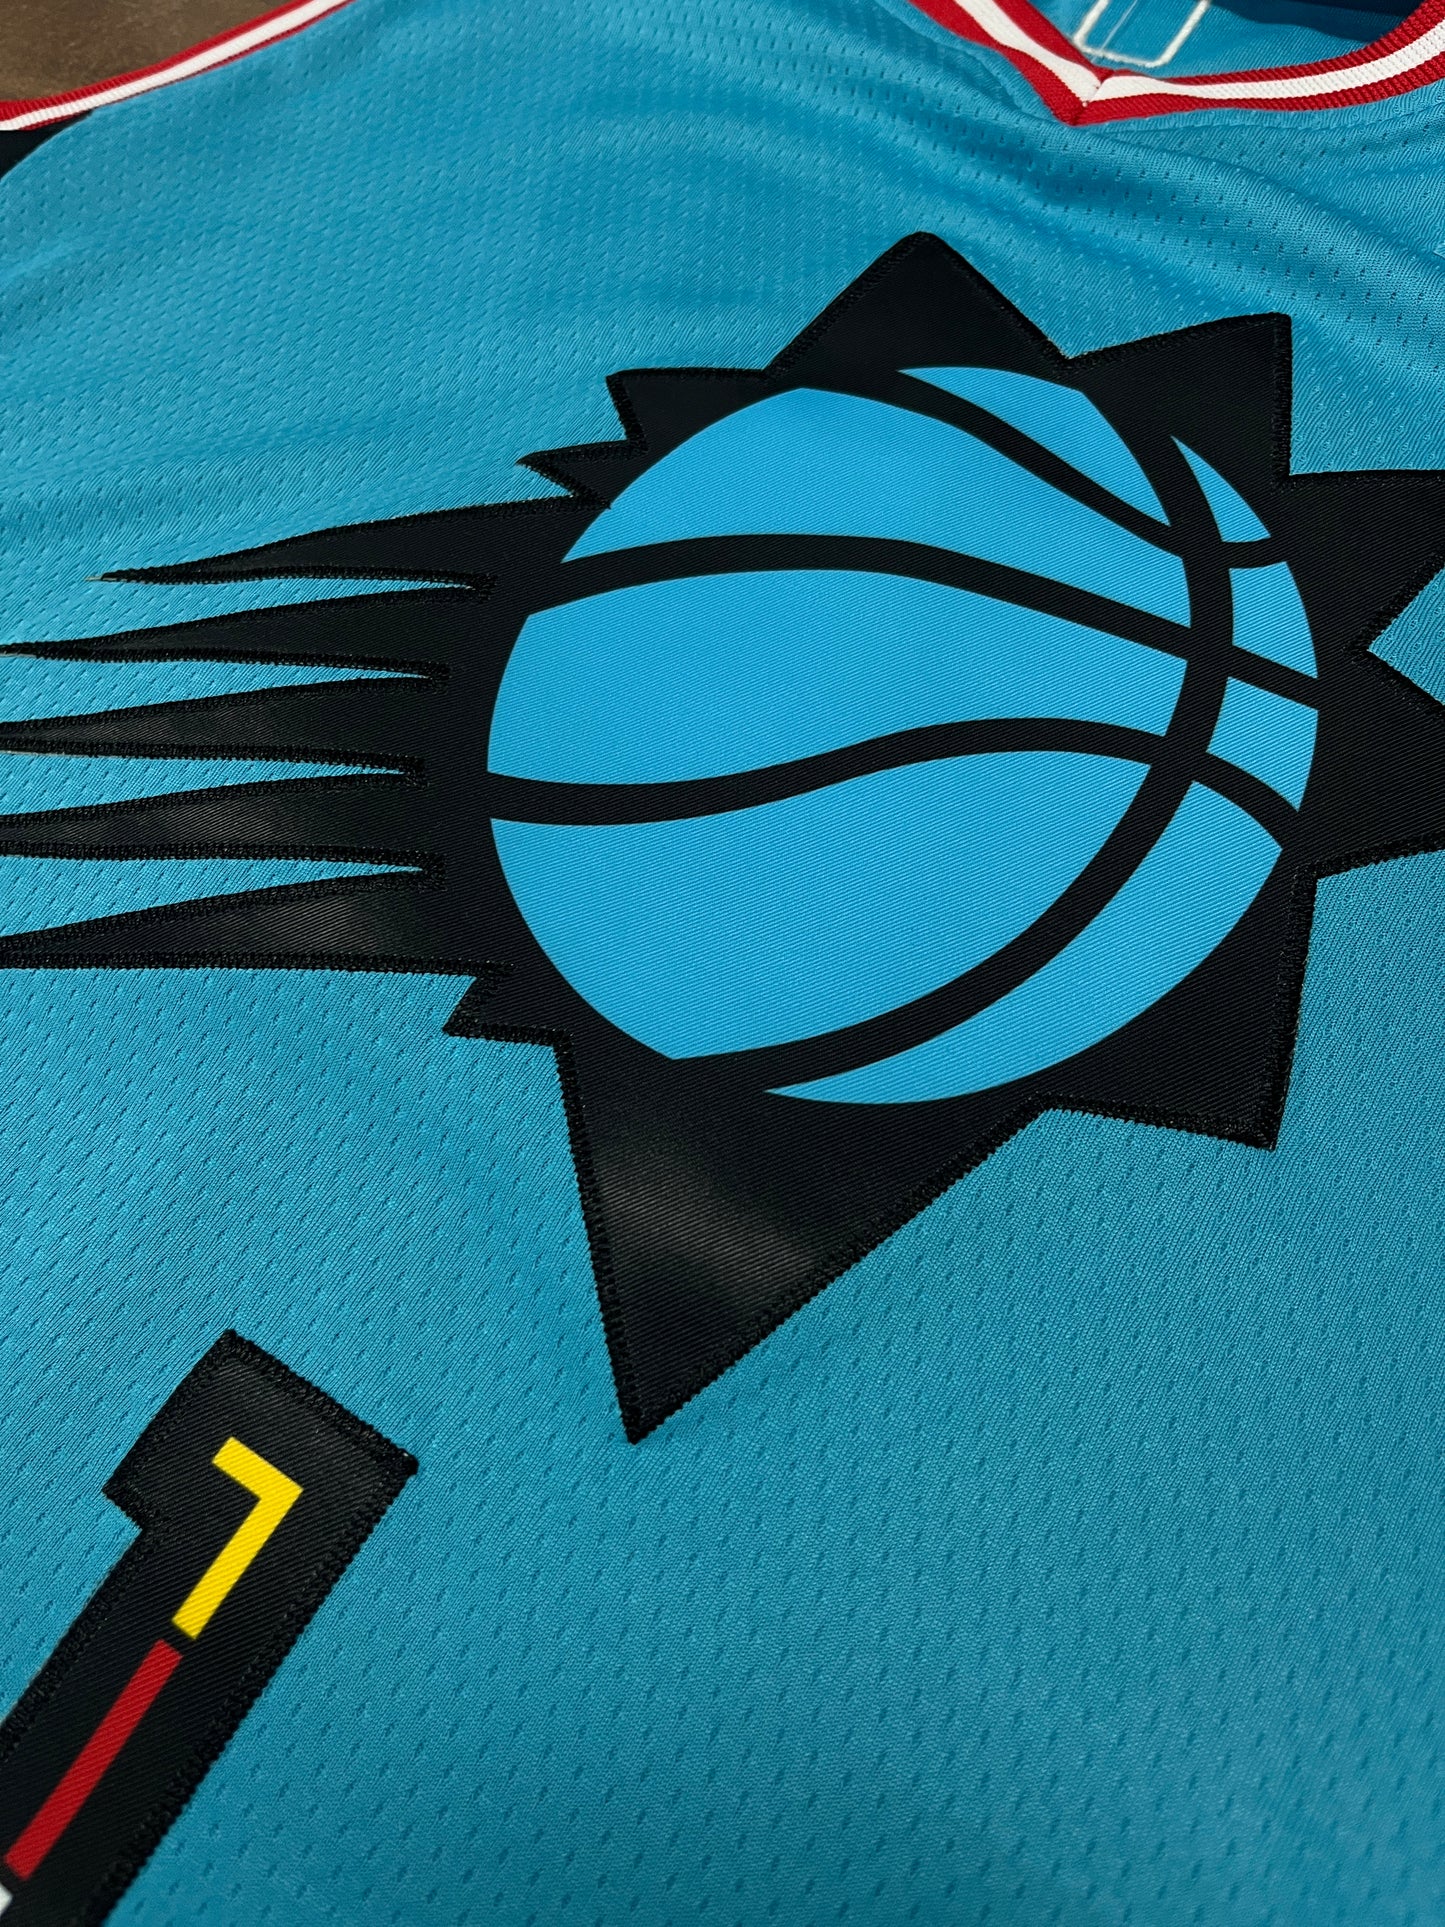 BOOKER 1 LIGHT BLUE Phoenix Suns NBA Jersey